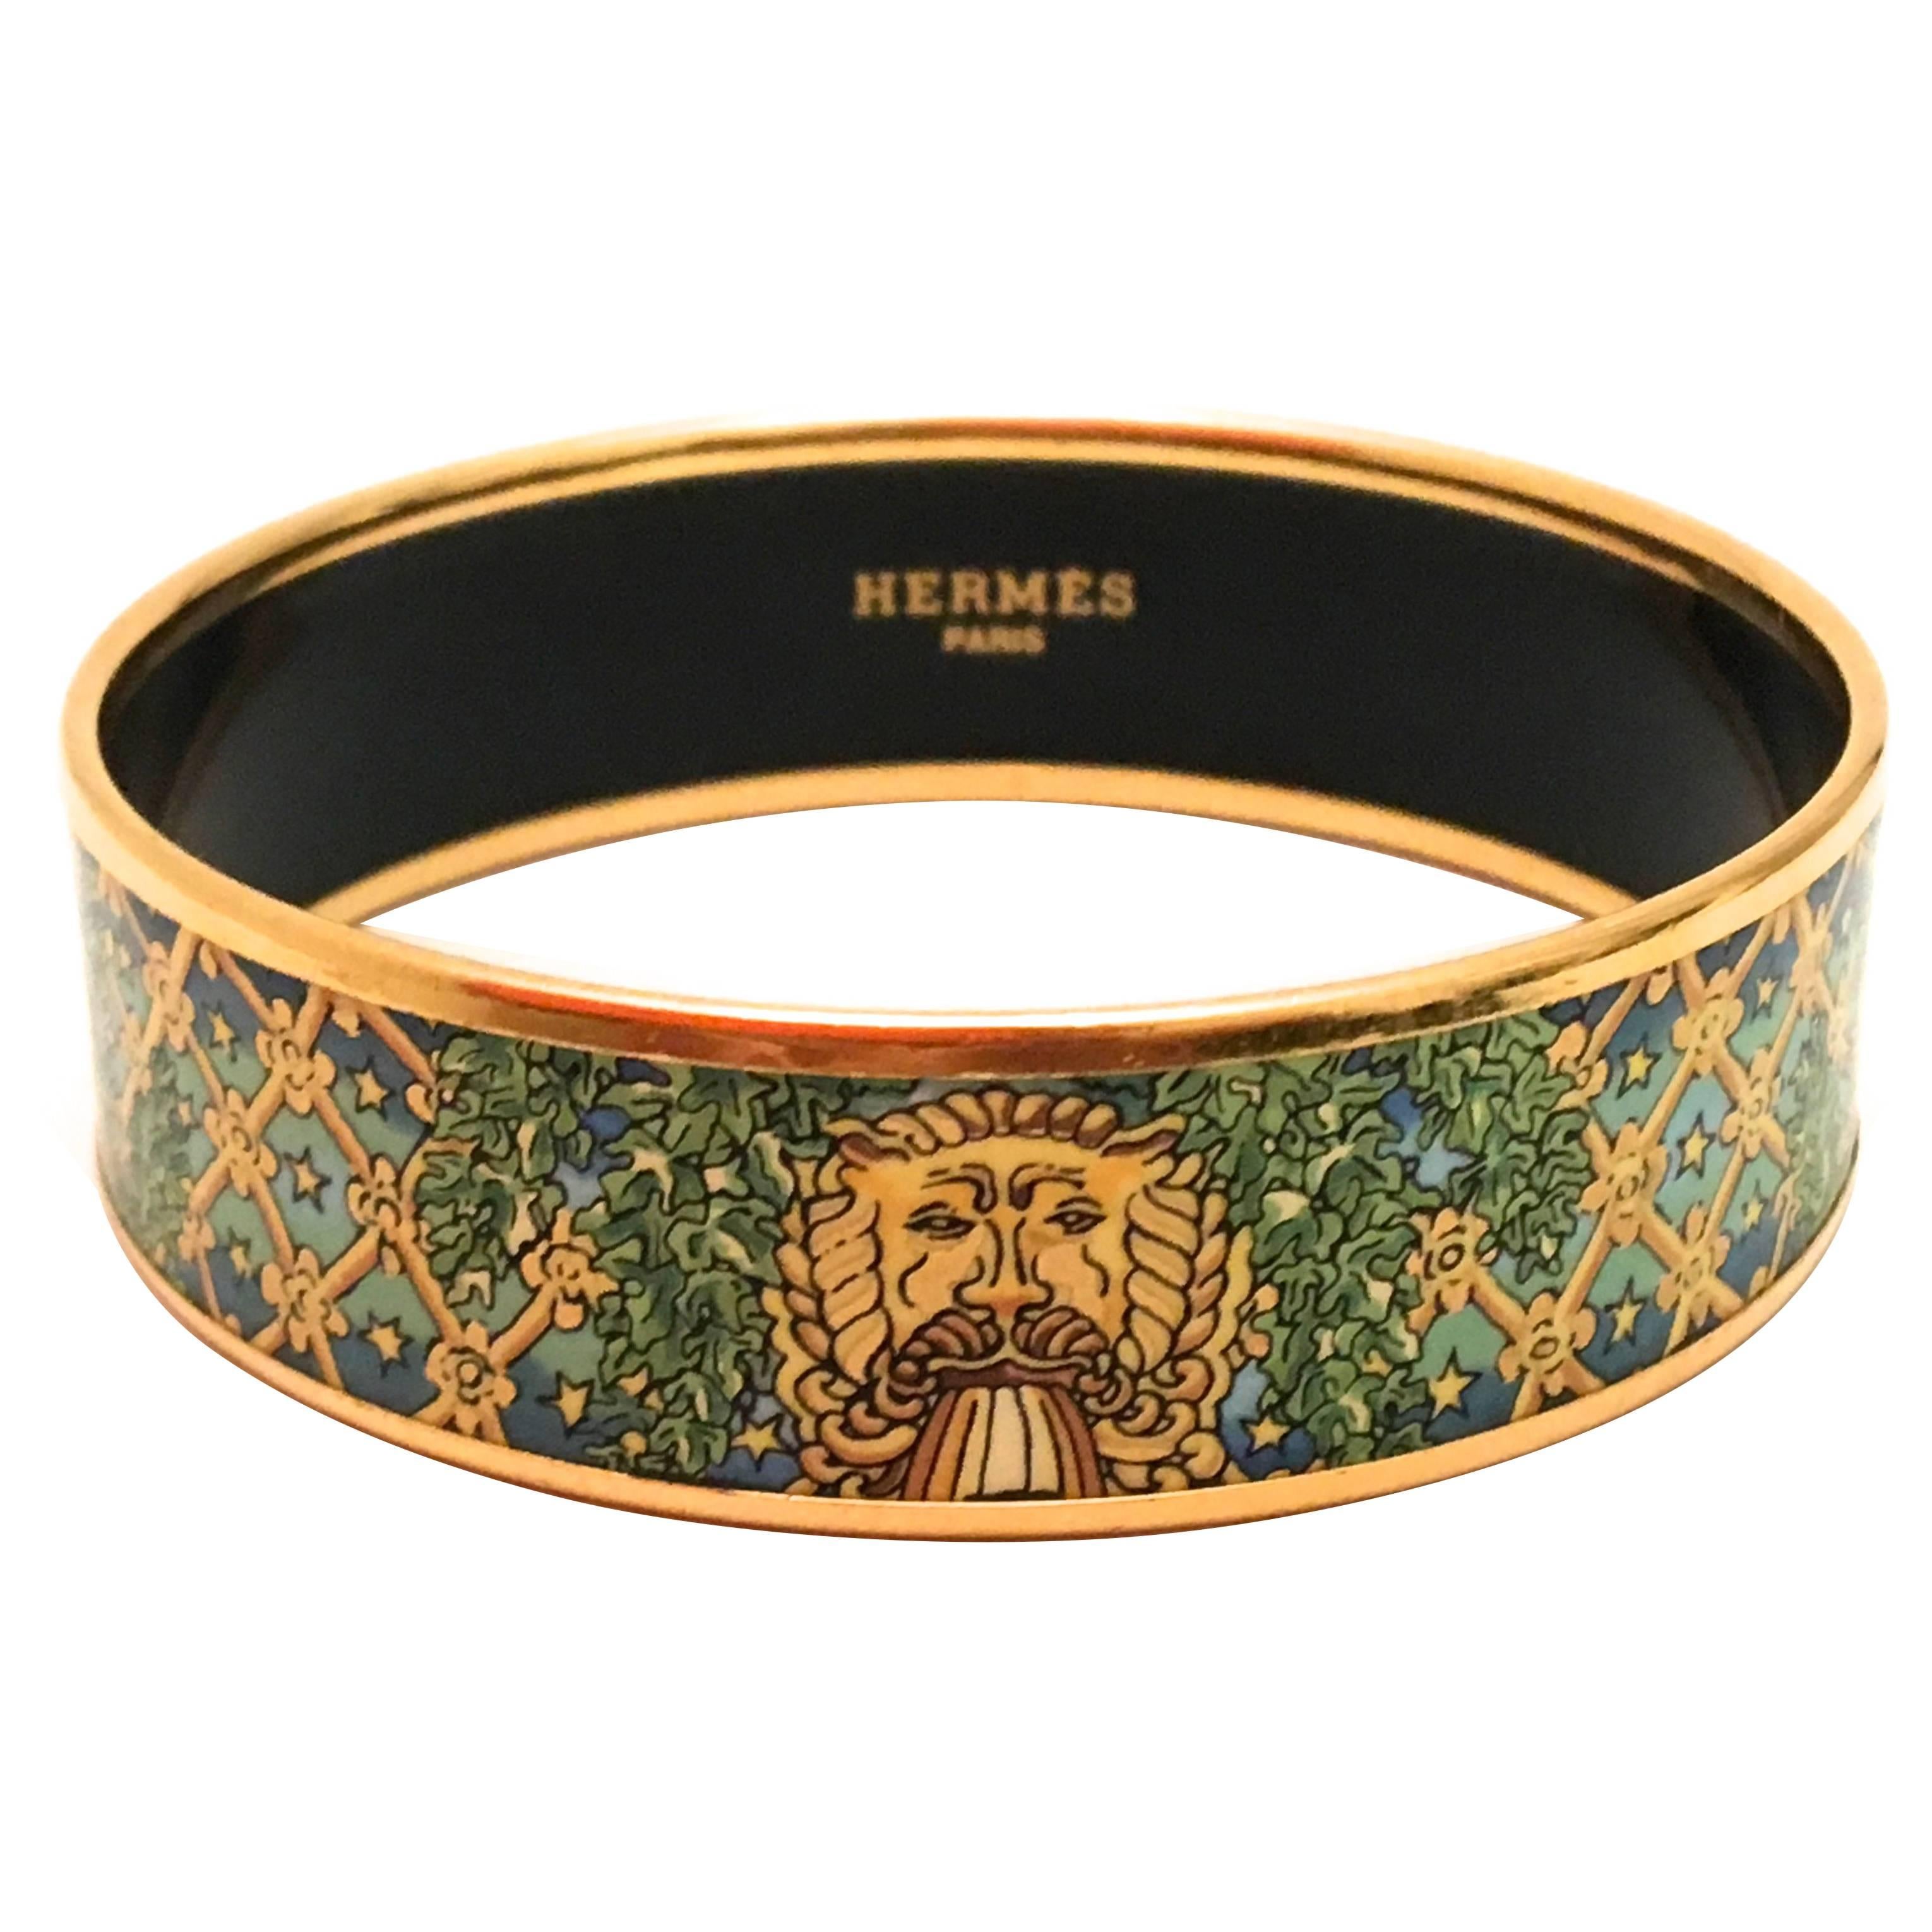 Hermes Enamel Bracelet - Large - Mint Condition